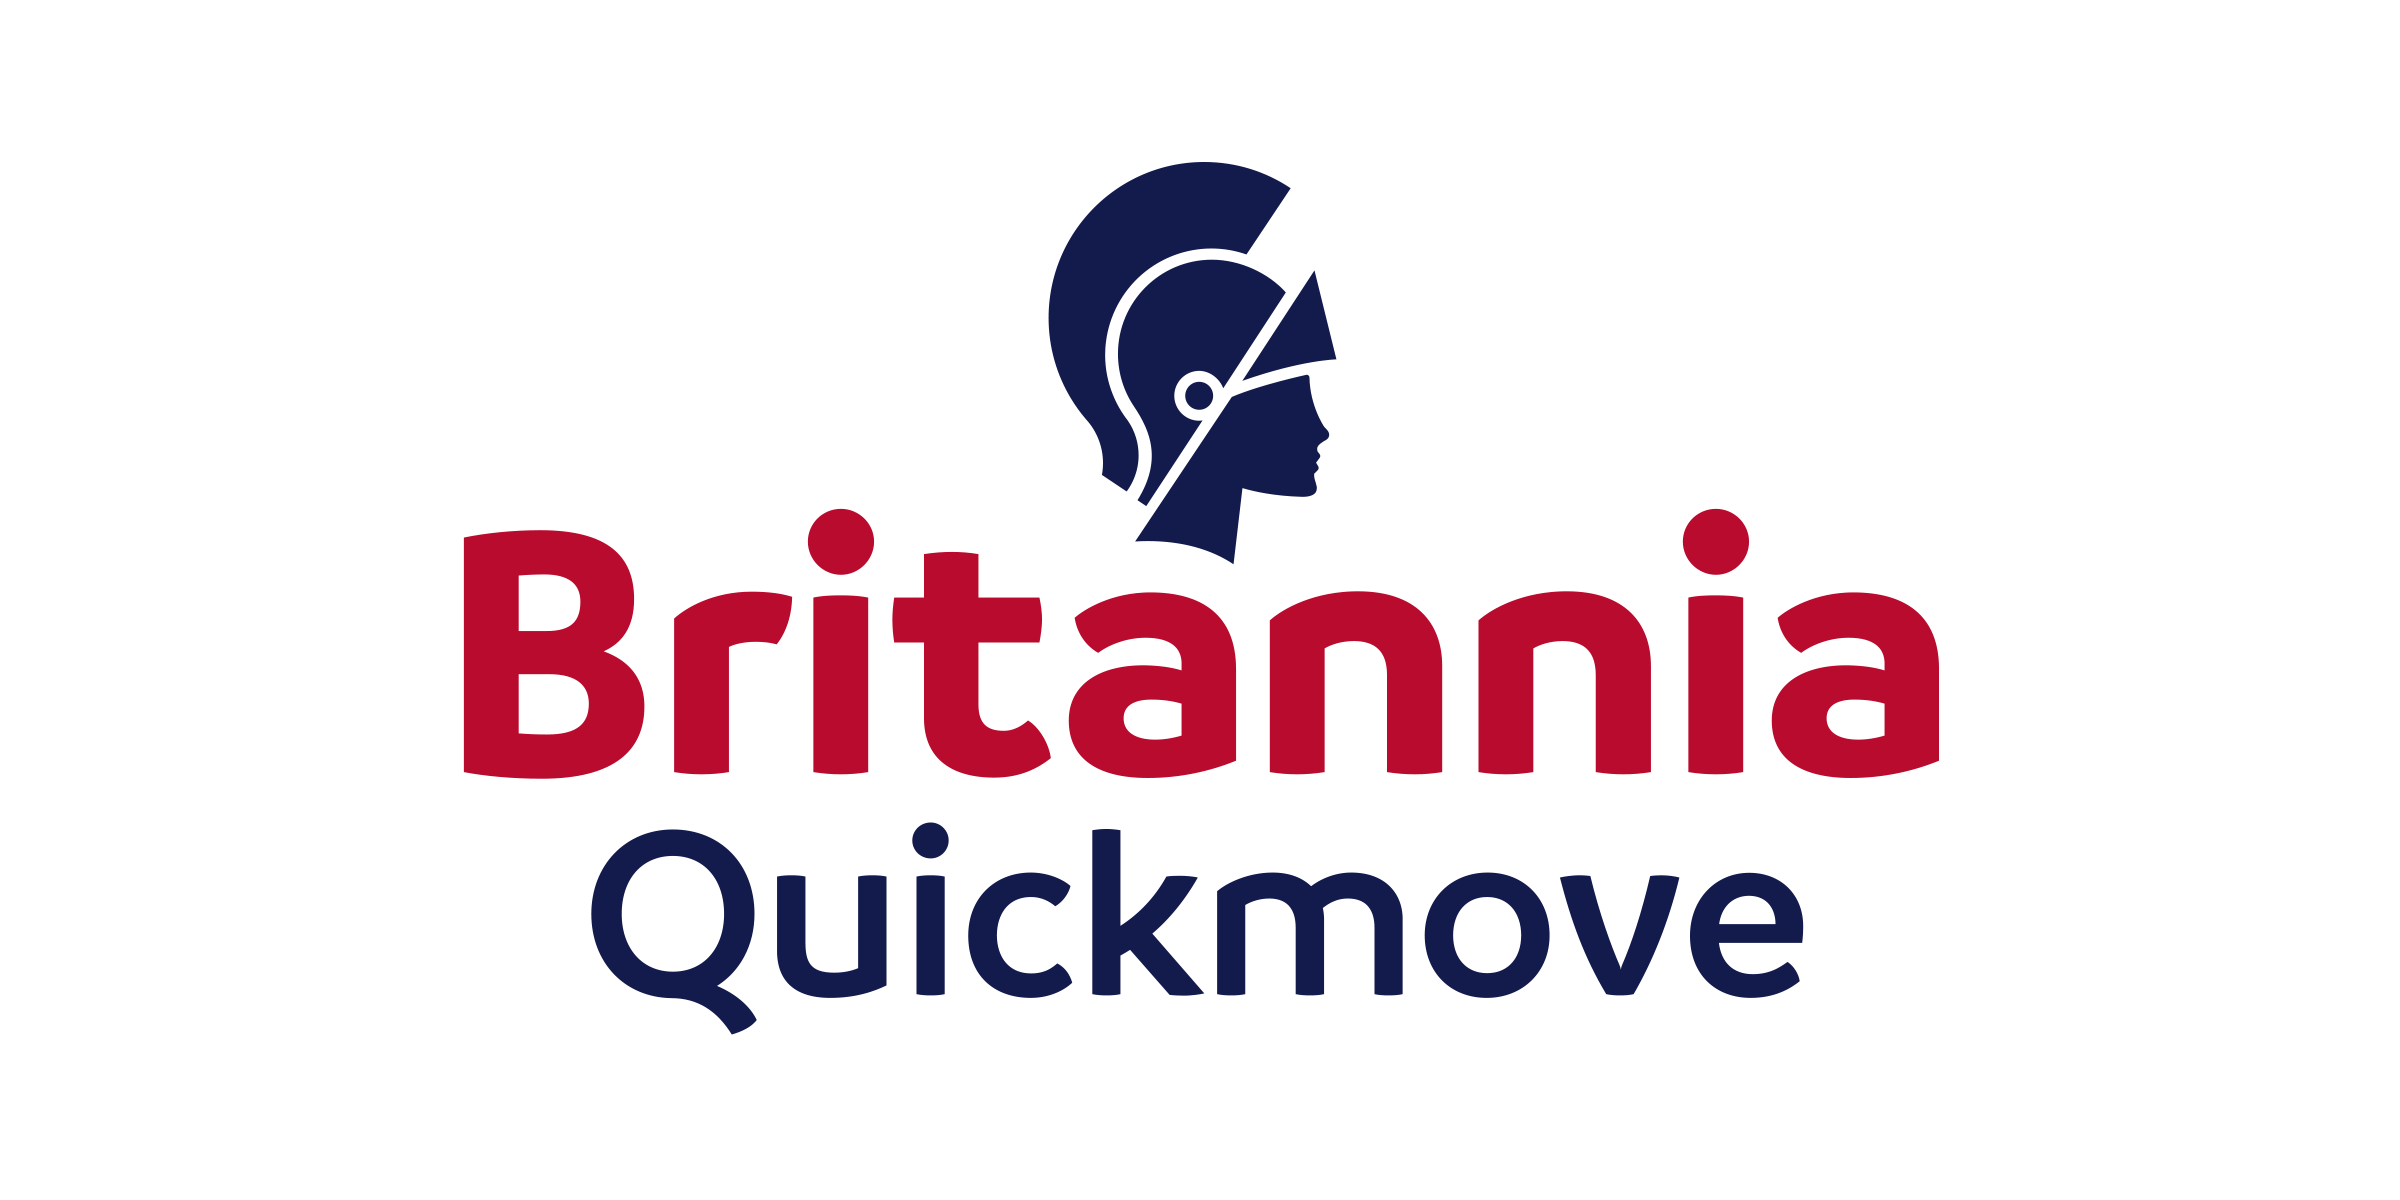 Britannia Quickmove